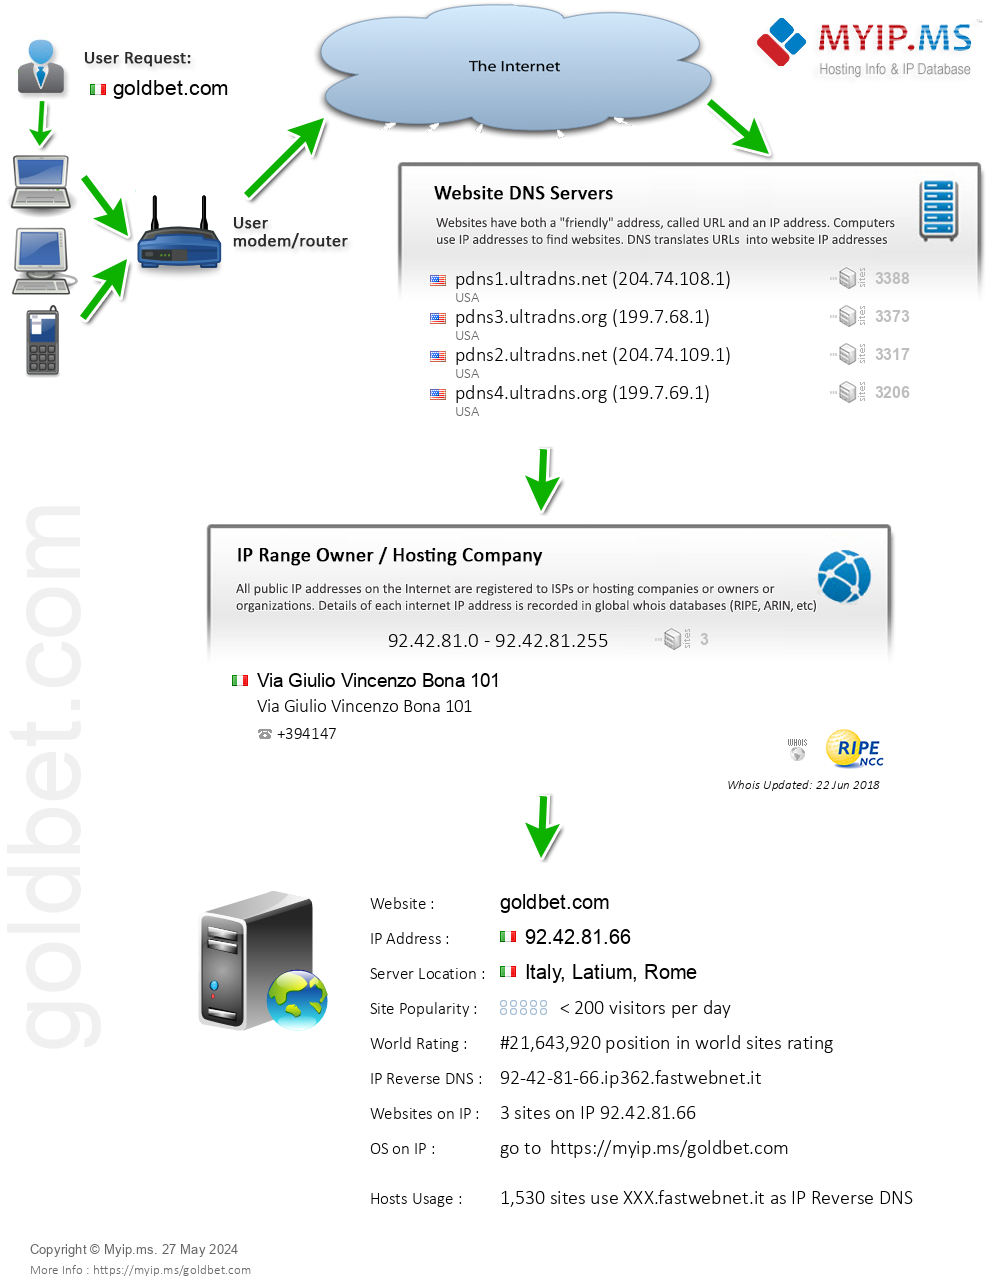 Goldbet.com - Website Hosting Visual IP Diagram